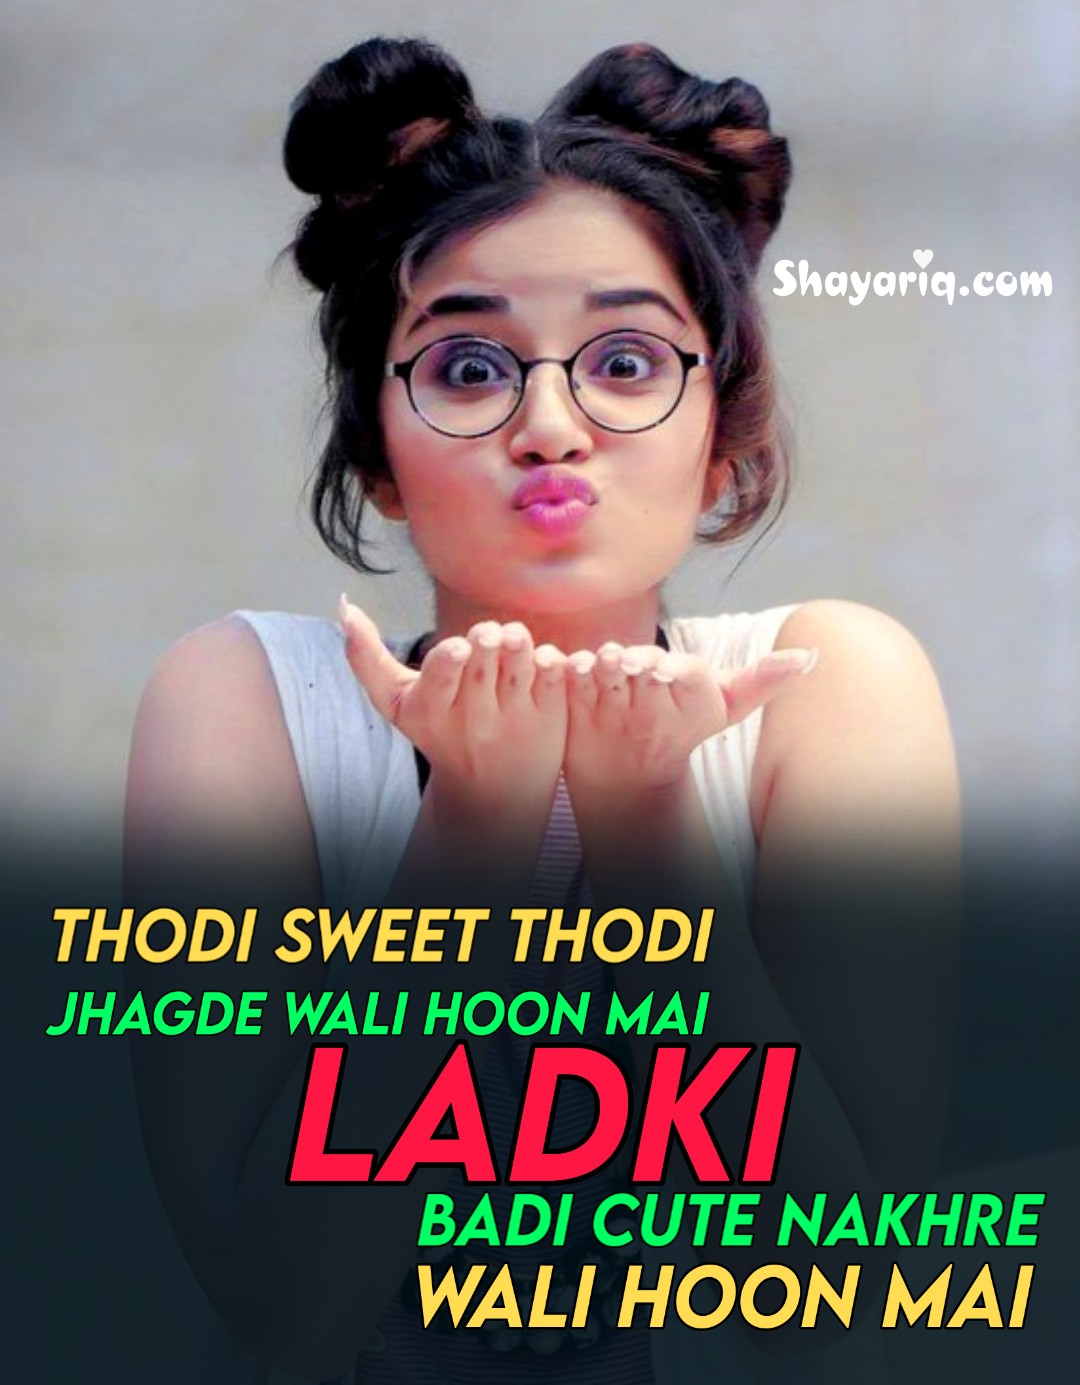 Ladki Badi Cute - Girl Shayari